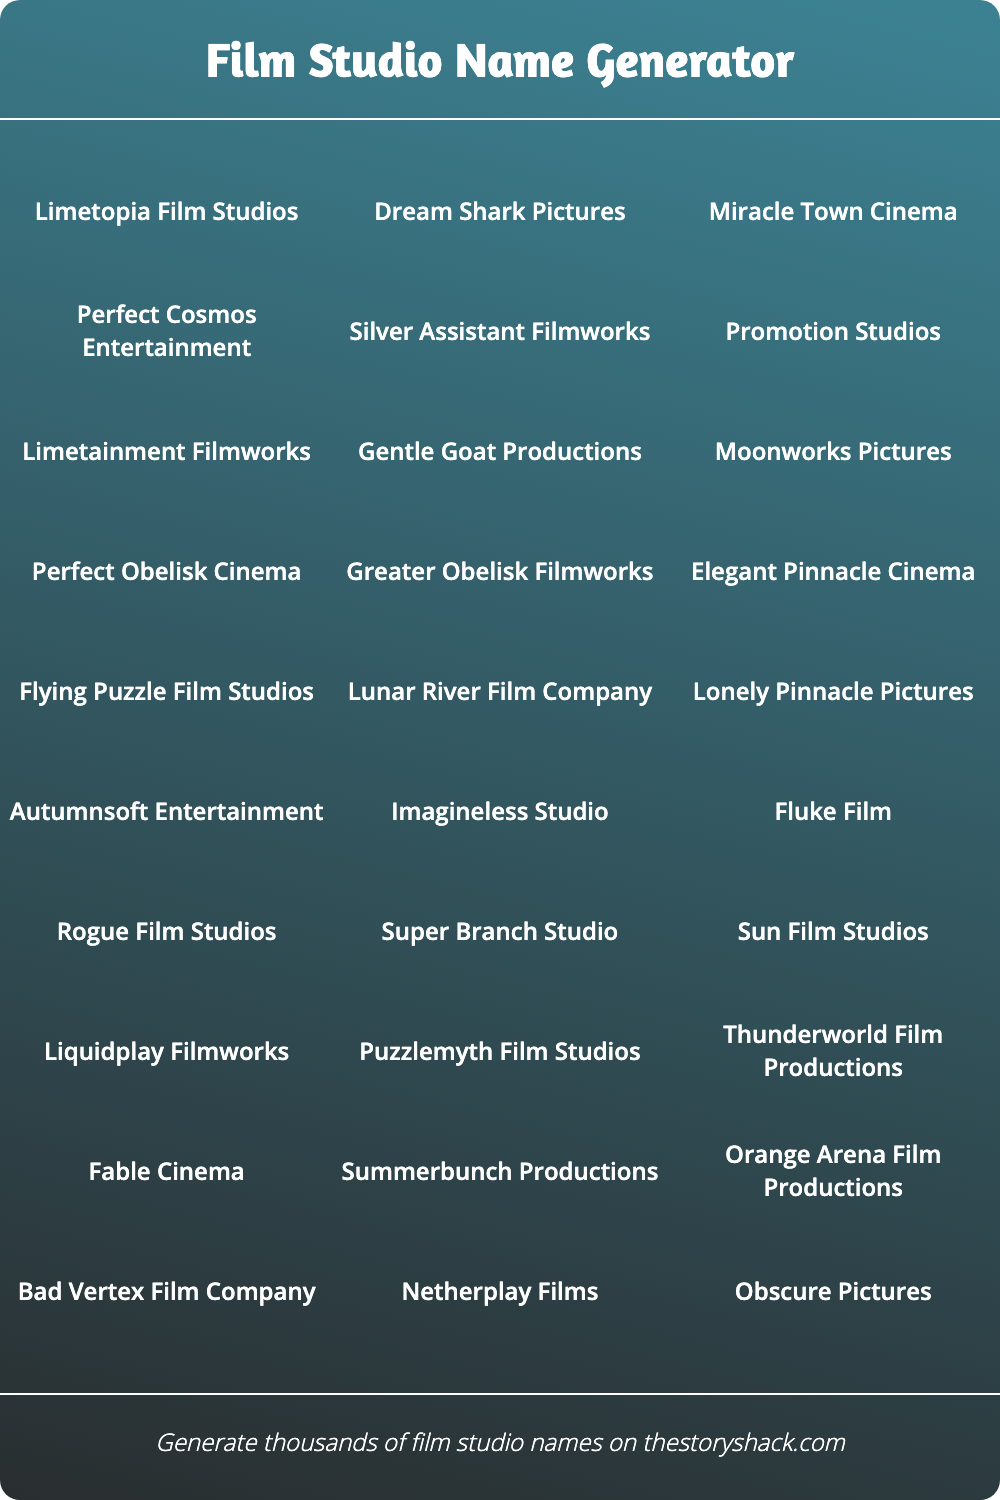 Film Studio Name Generator | 1000s of random film studio names